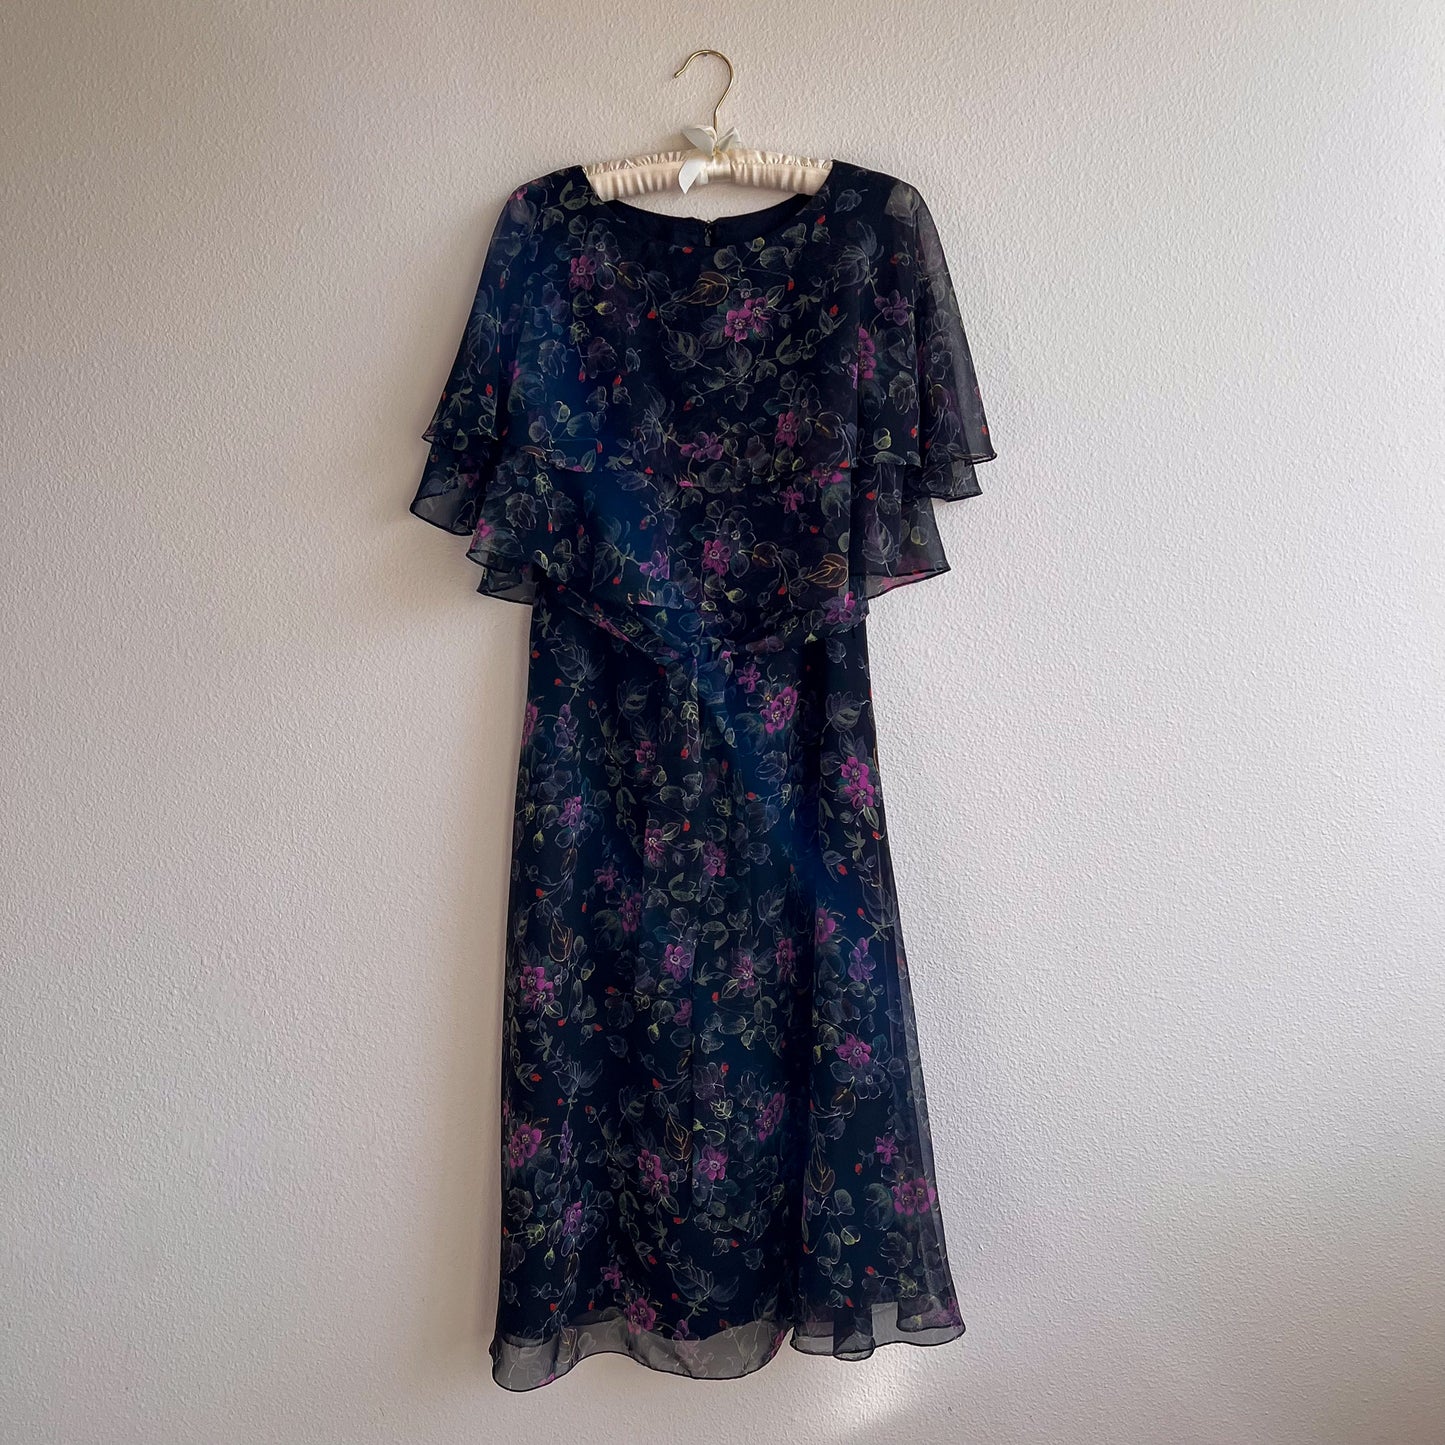 1970s Black Chiffon Dress With Purple Flowers (M/L)